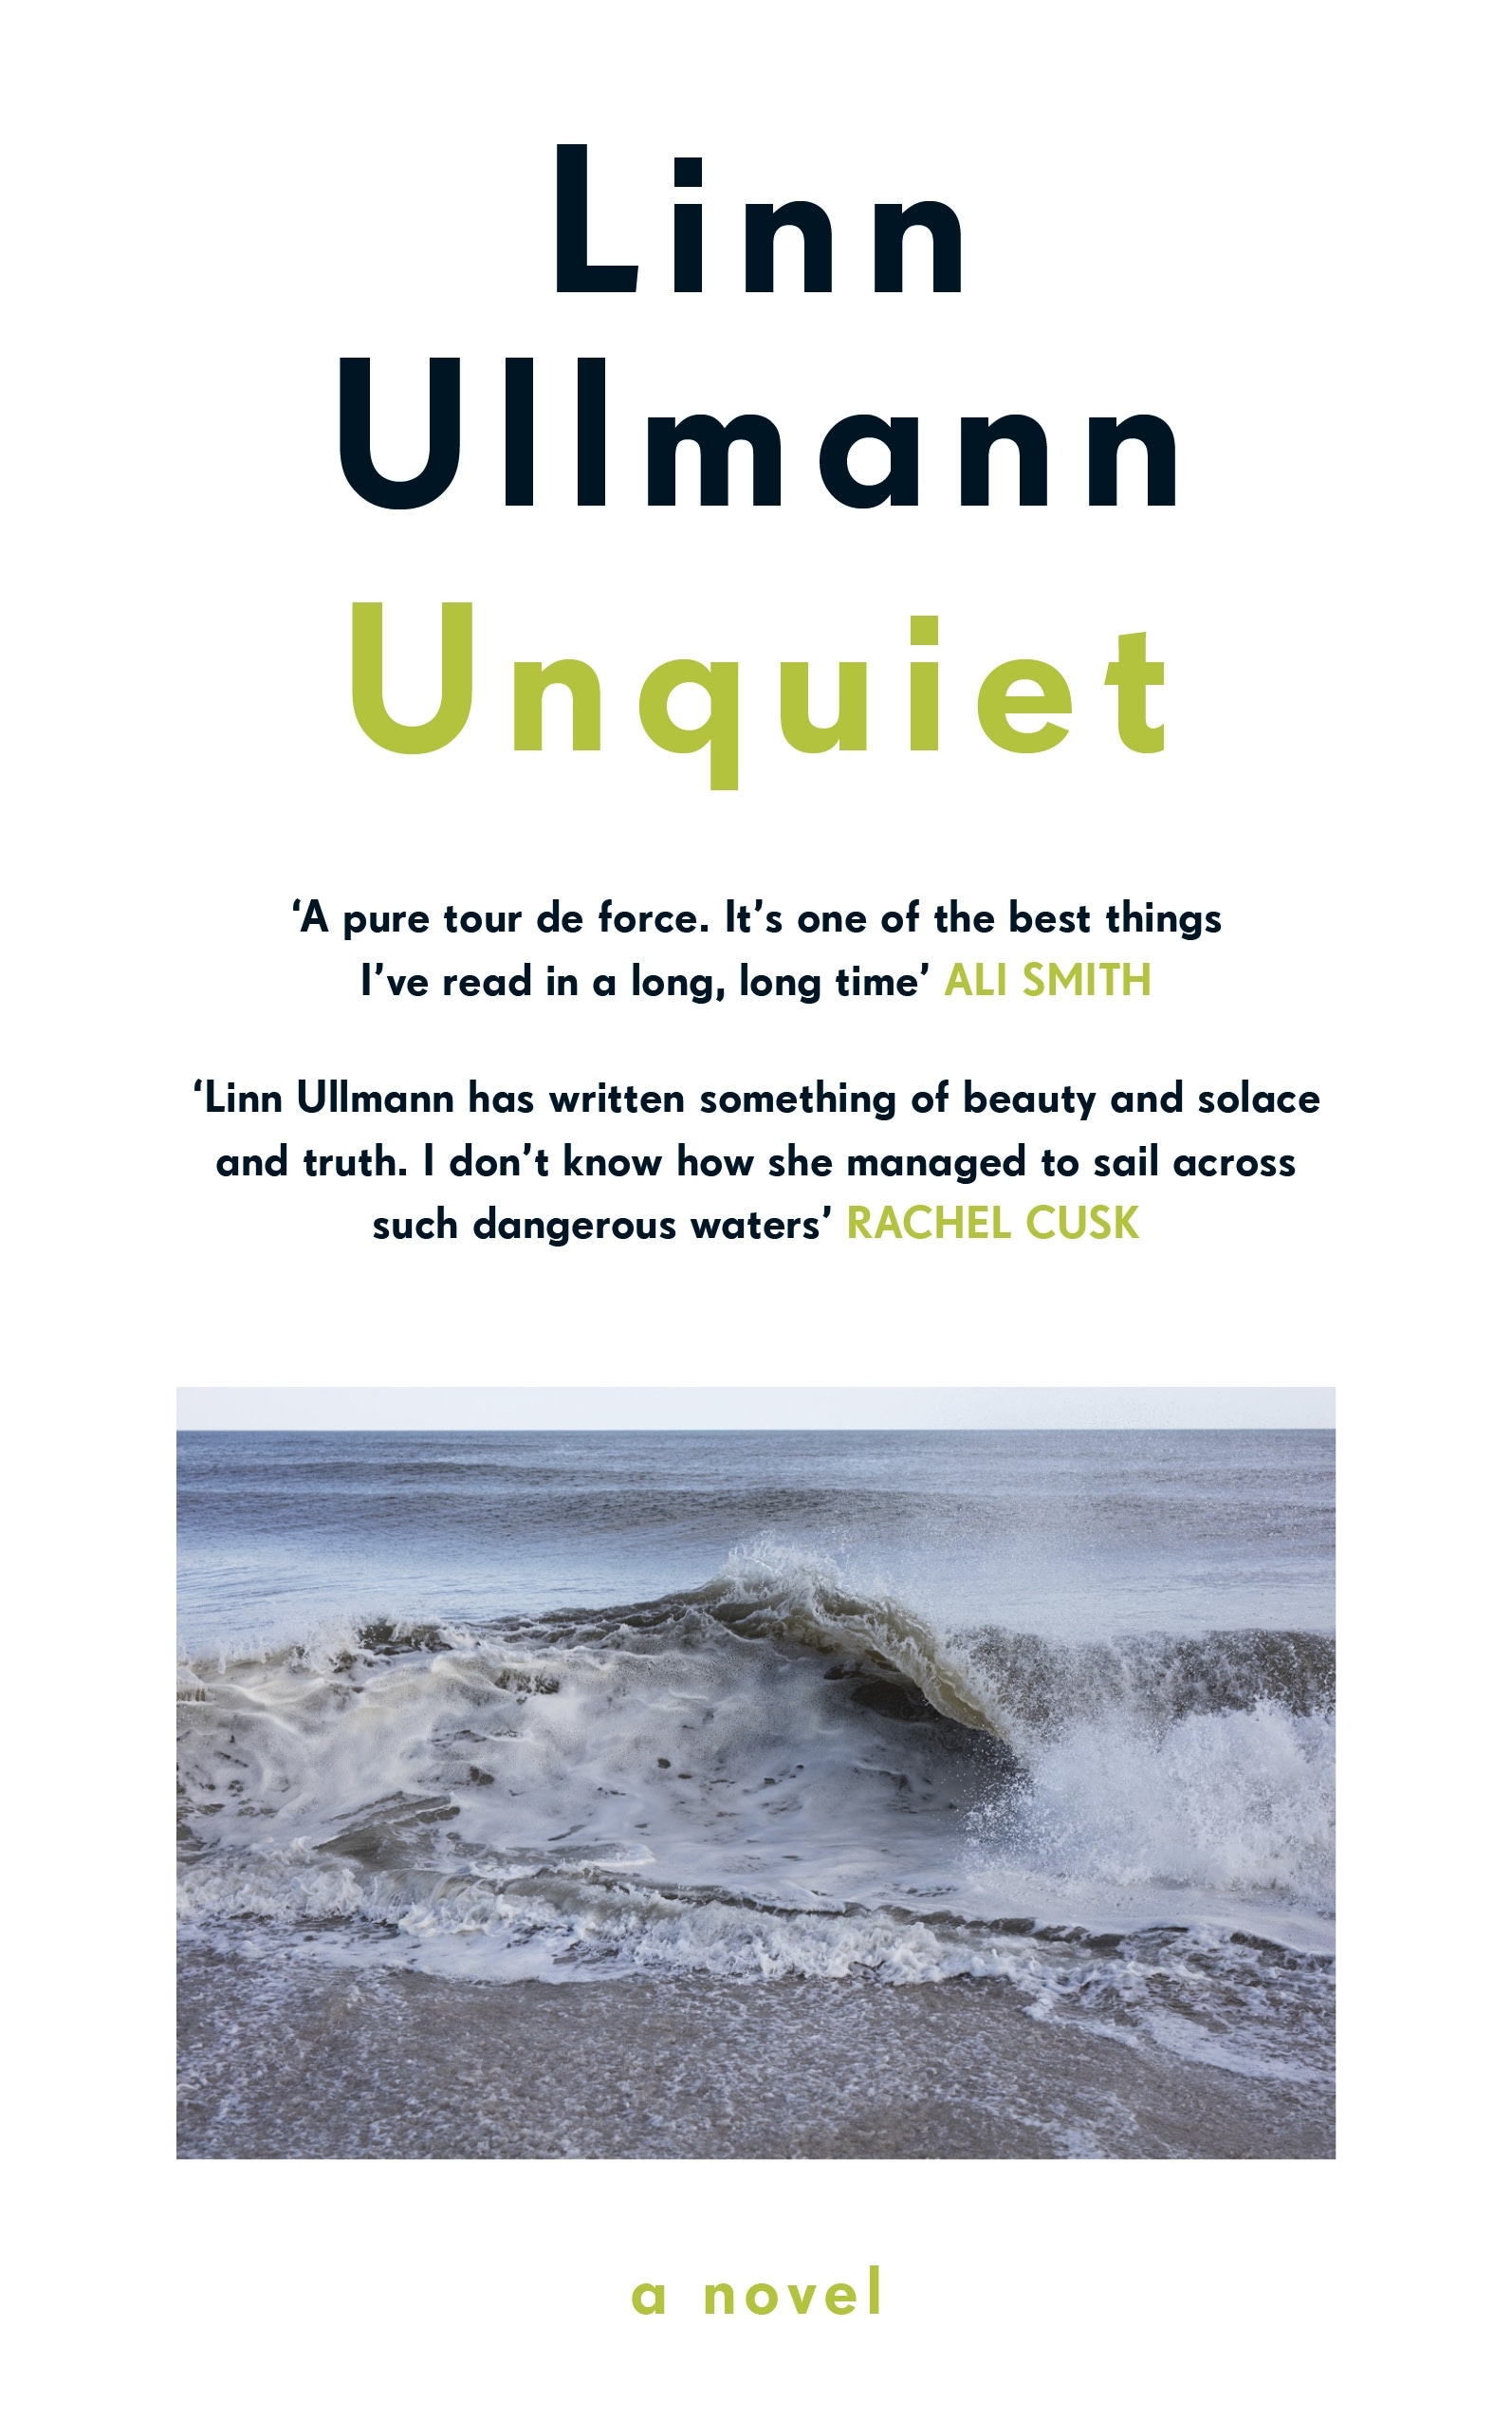 Book “Unquiet” by Linn Ullmann — September 3, 2020